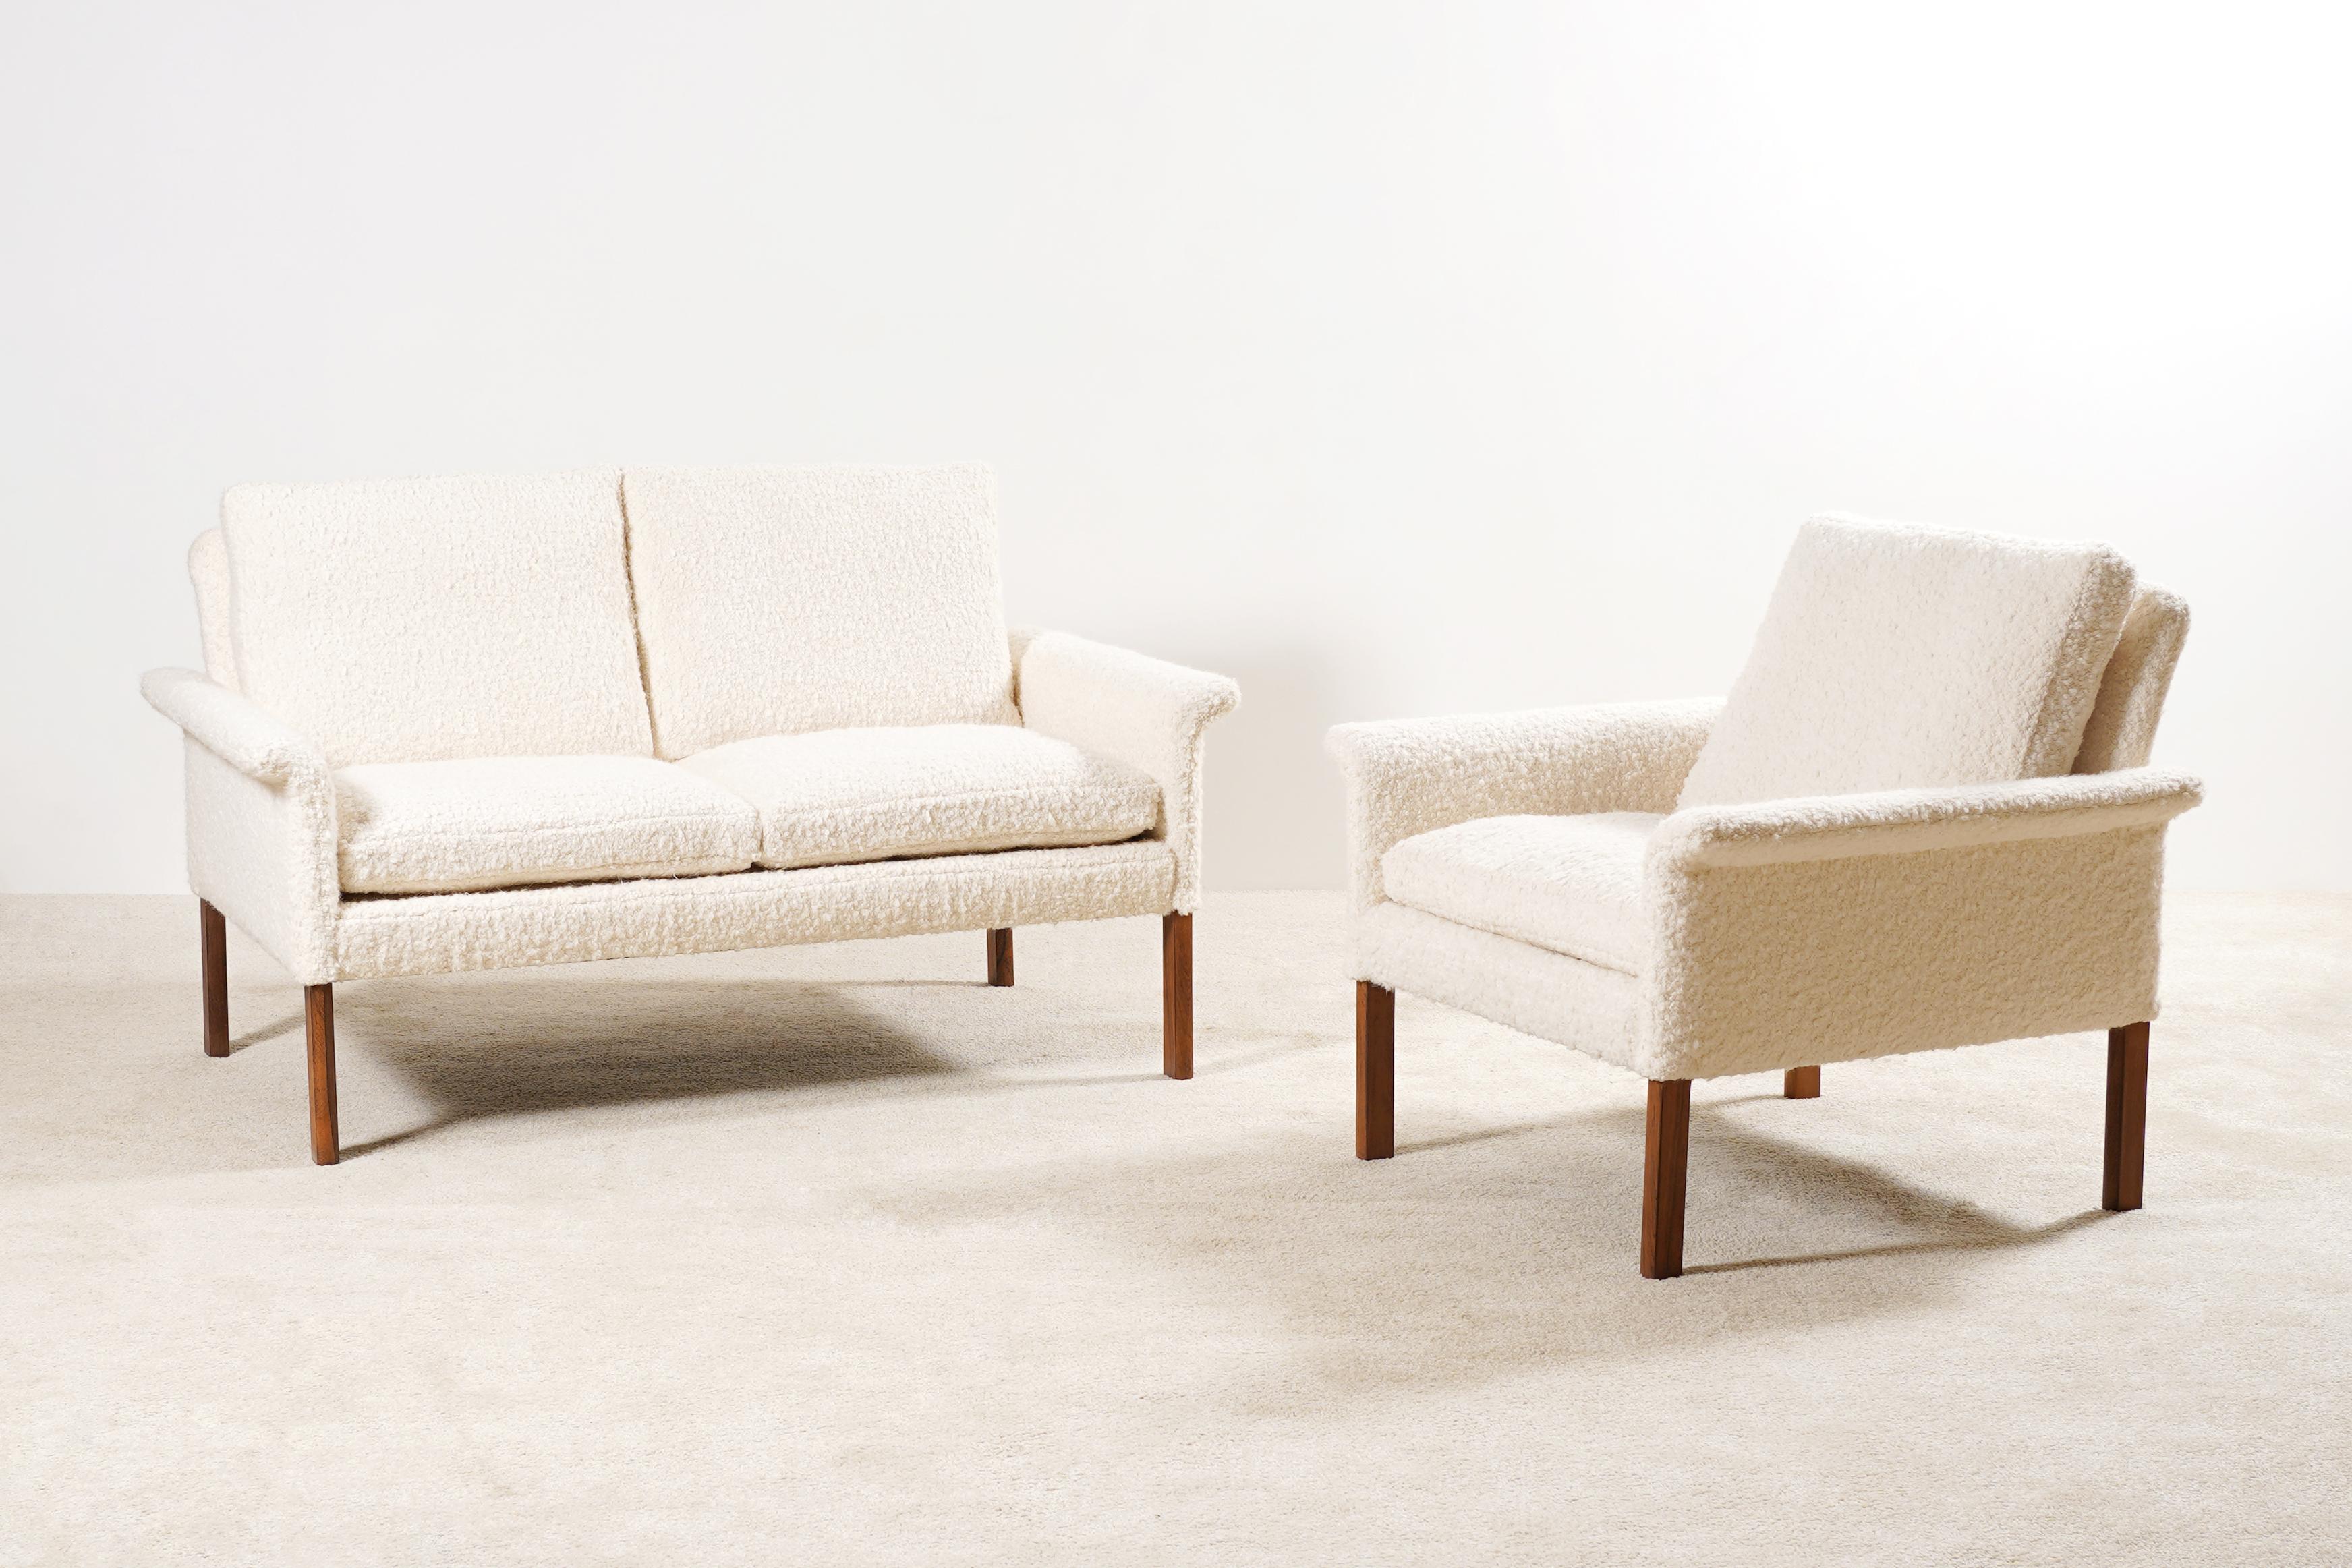 Bel ensemble Lounge composé d'un canapé deux places et d'un fauteuil modèle 500 conçu par Hans/One pour la société danoise CS Møbler.

Belle qualité pour les pieds en bois de rose.

Pièces originales des années 1960 Nouvellement retapissé de